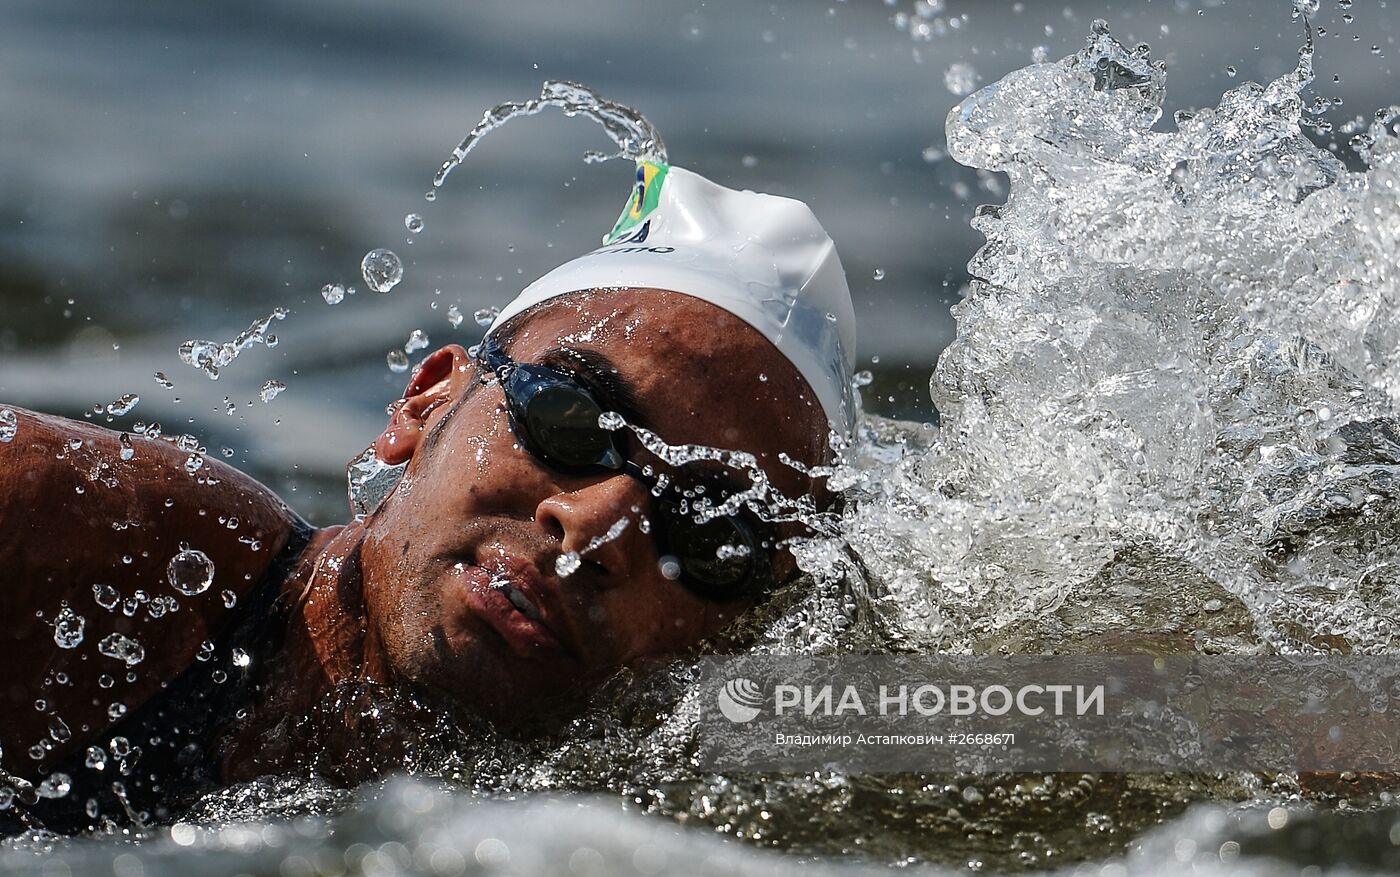 Чемпионат мира FINA 2015. Плавание на открытой воде. Команды